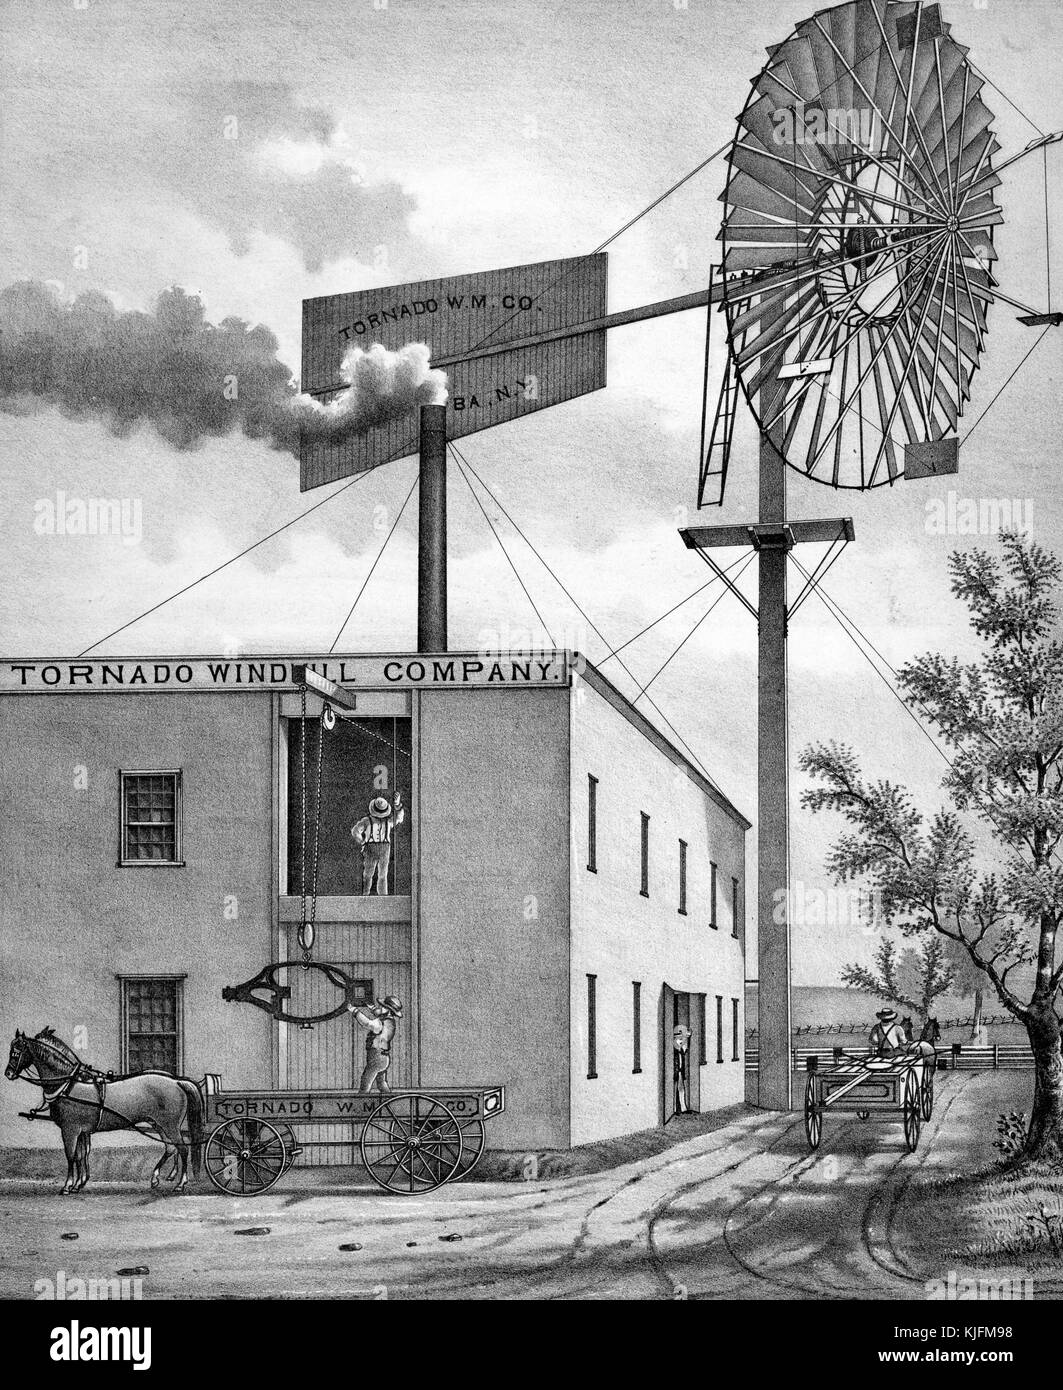 Usine pour la tornade, avec les travailleurs de l'entreprise moulin moulin chargement en pièces de chariot tiré par des chevaux, l'Elba, New York, 1876. à partir de la bibliothèque publique de new york. Banque D'Images